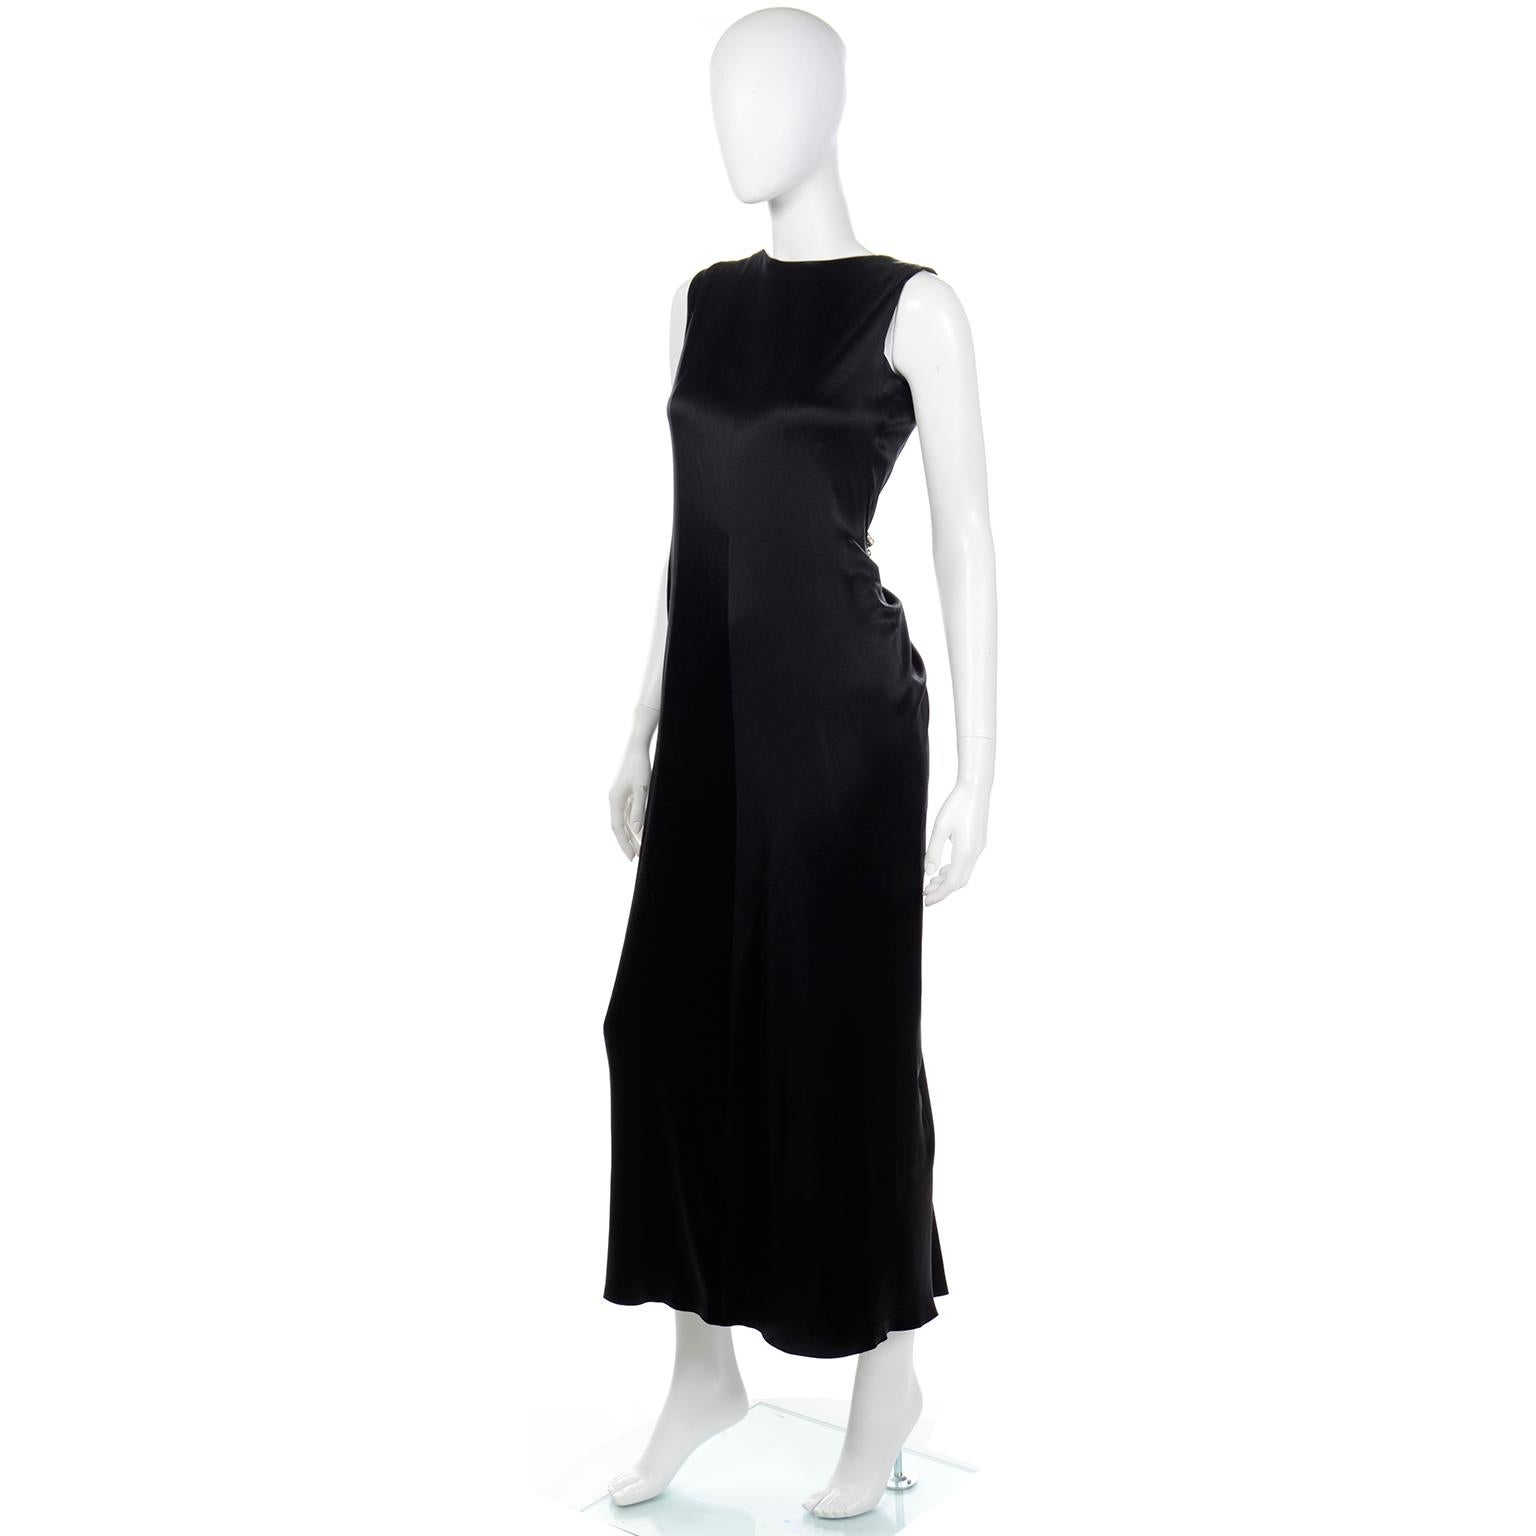 Black 1986 Oscar de la Renta Plunging Back Evening Dress W Rhinestone Bow Brooch For Sale